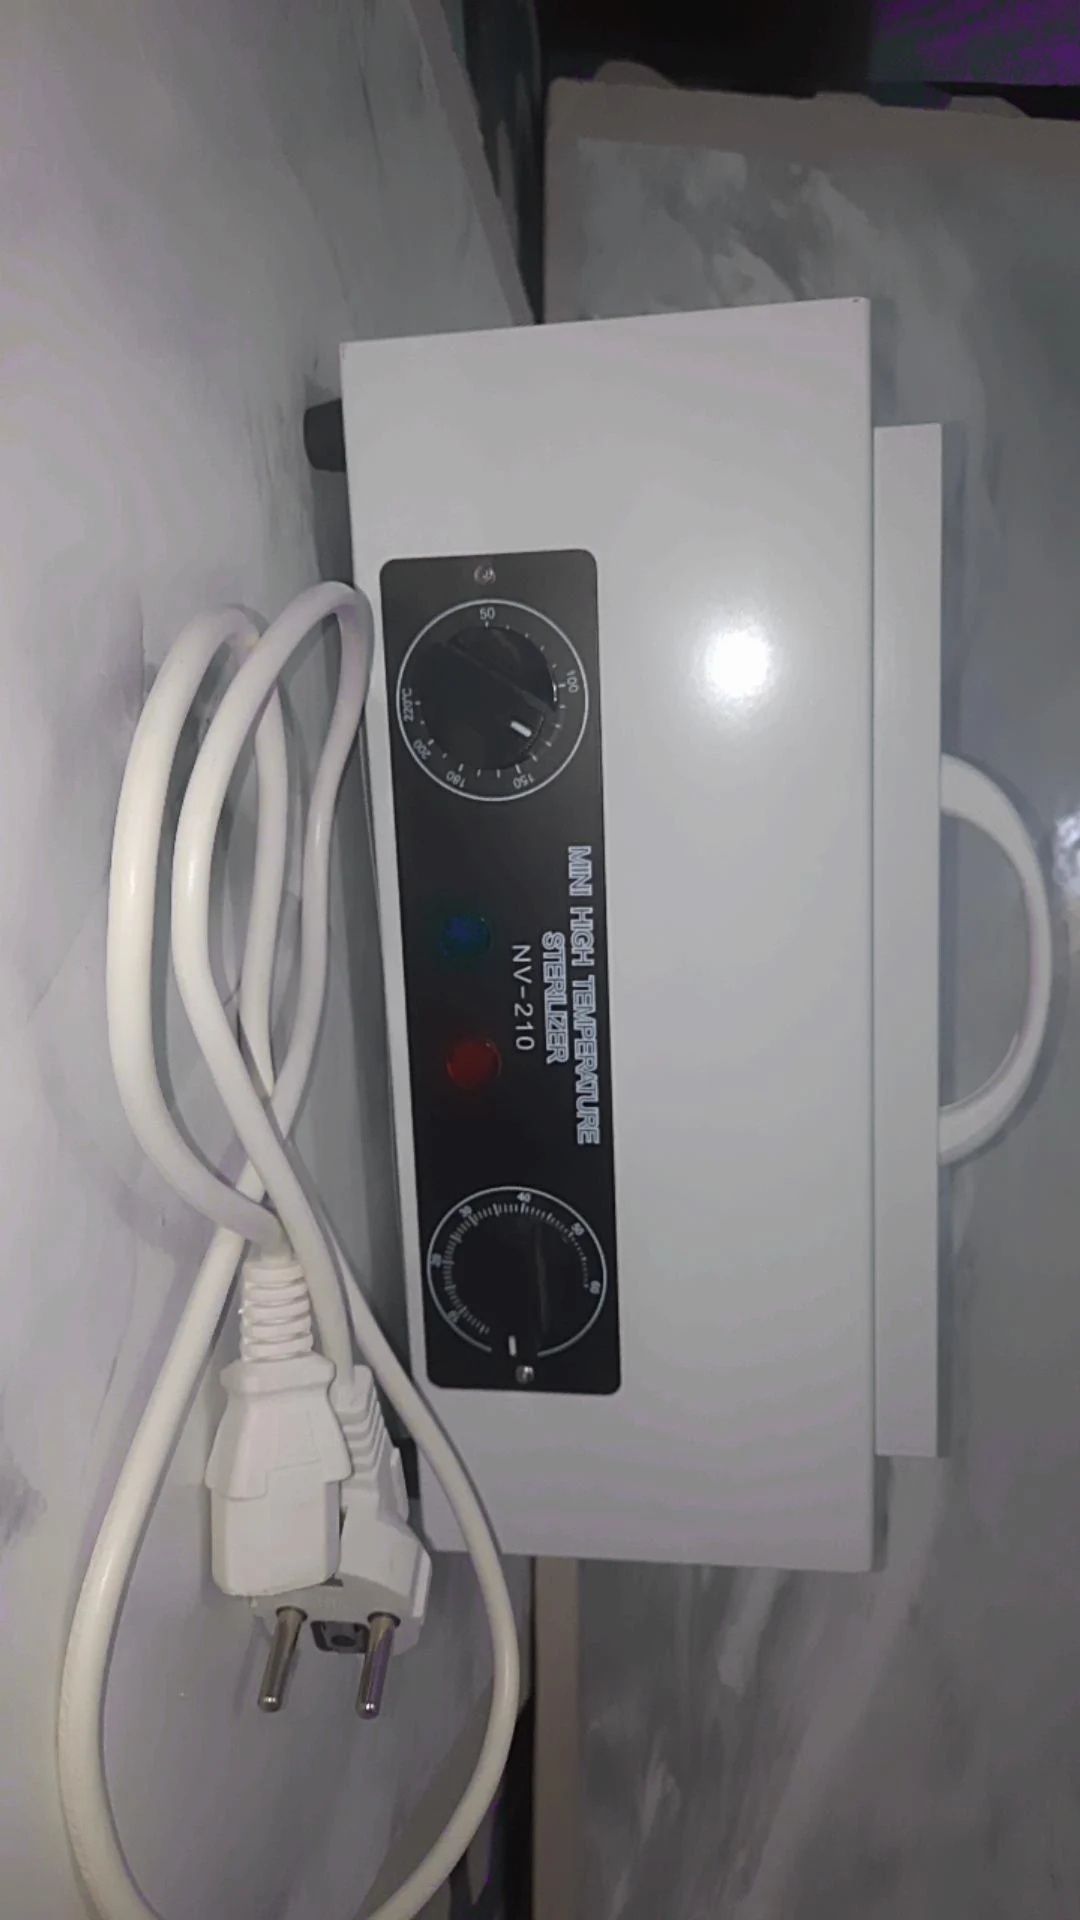 Sterylizator gorącym powietrzem NV-210